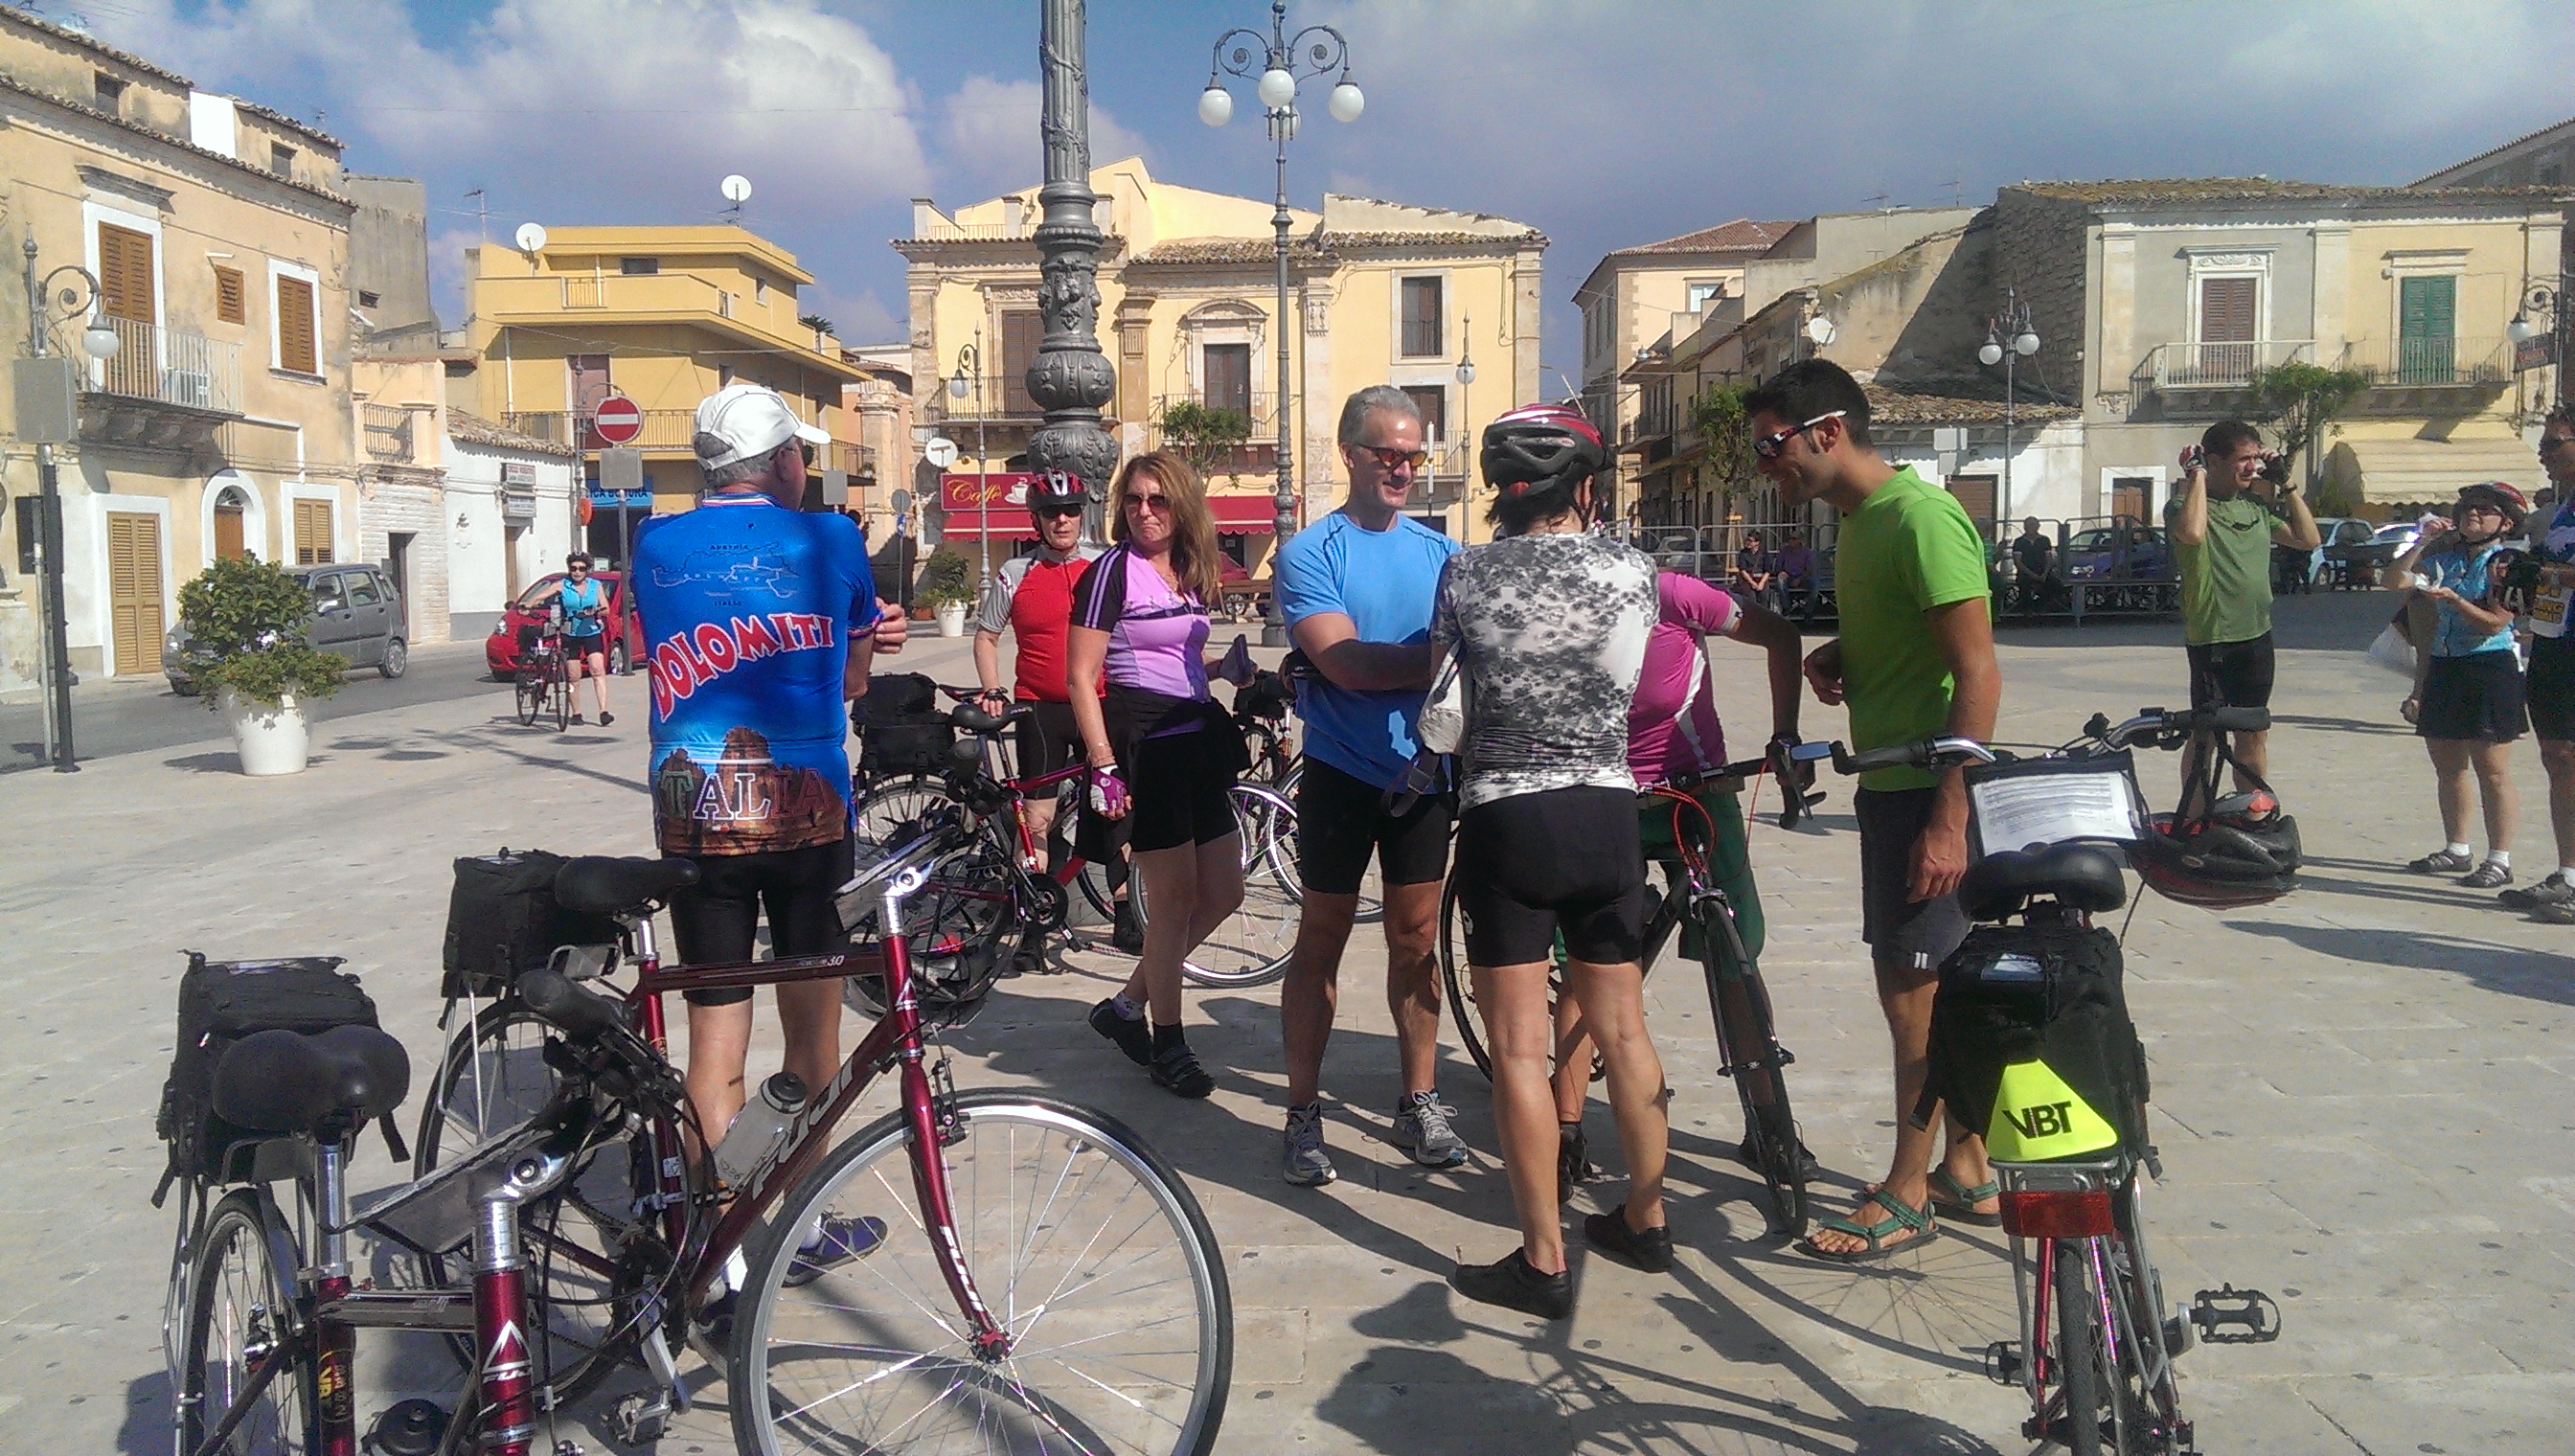  Dagli Usa e dal Canada per far visita a Santa Croce: 19 ciclisti fanno sosta in piazza Vittorio Emanuele